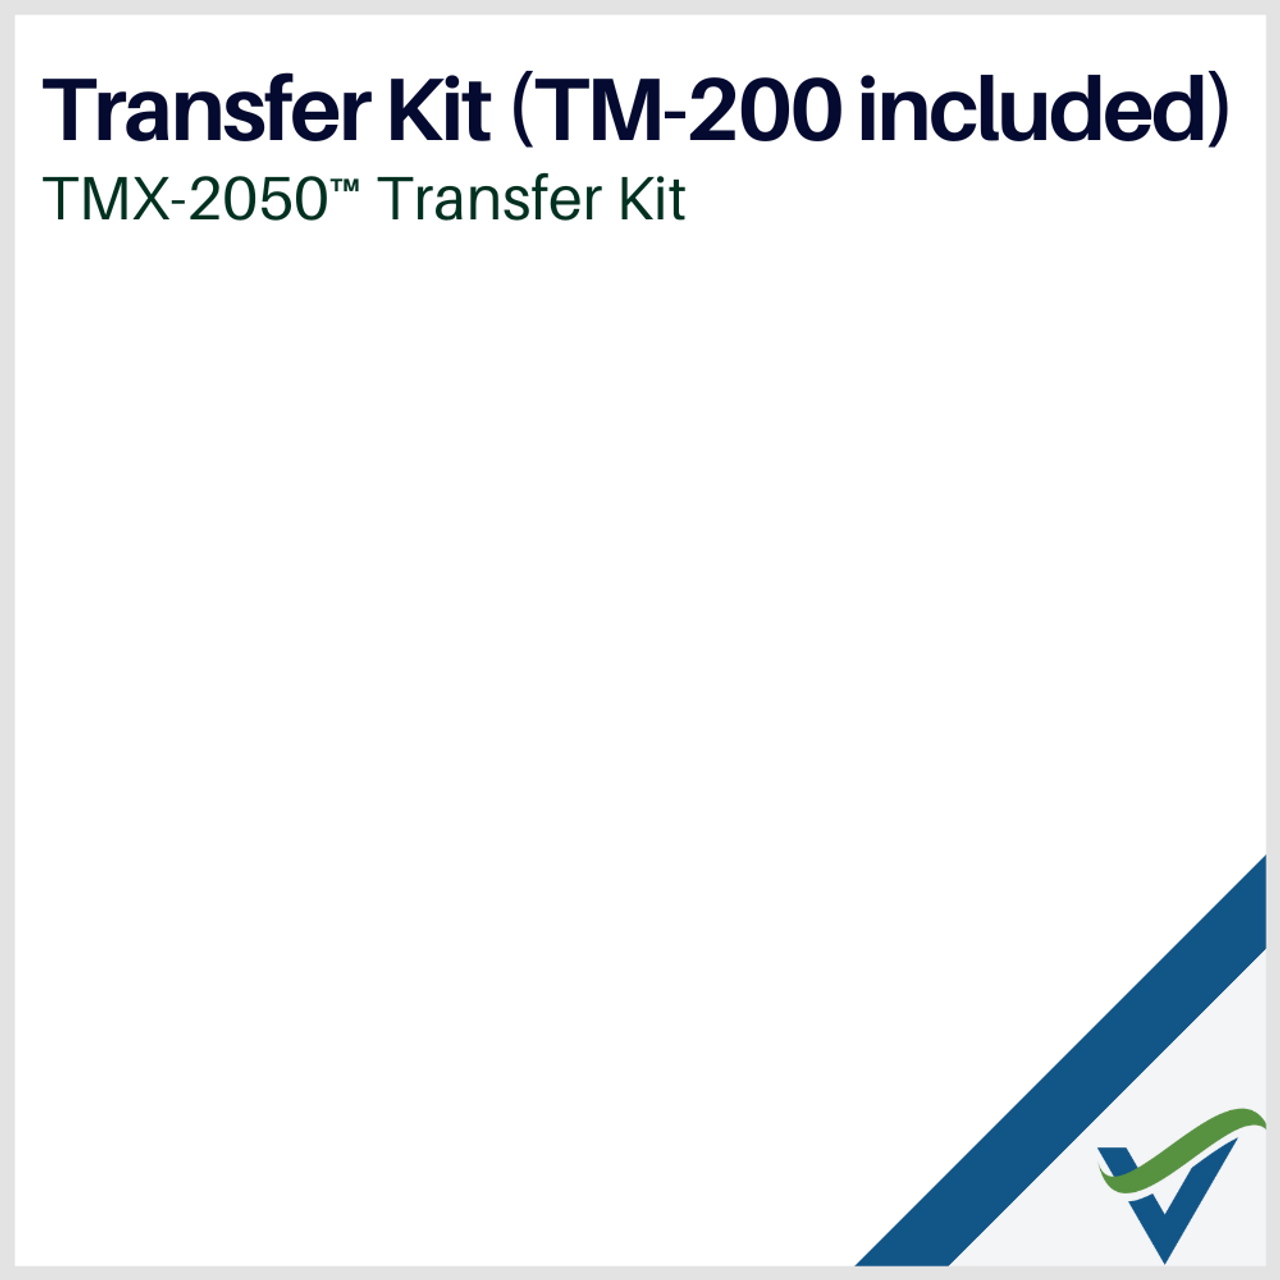 Vantage_Northeast_TMX-2050_Transfer-Kit_with-TM-200